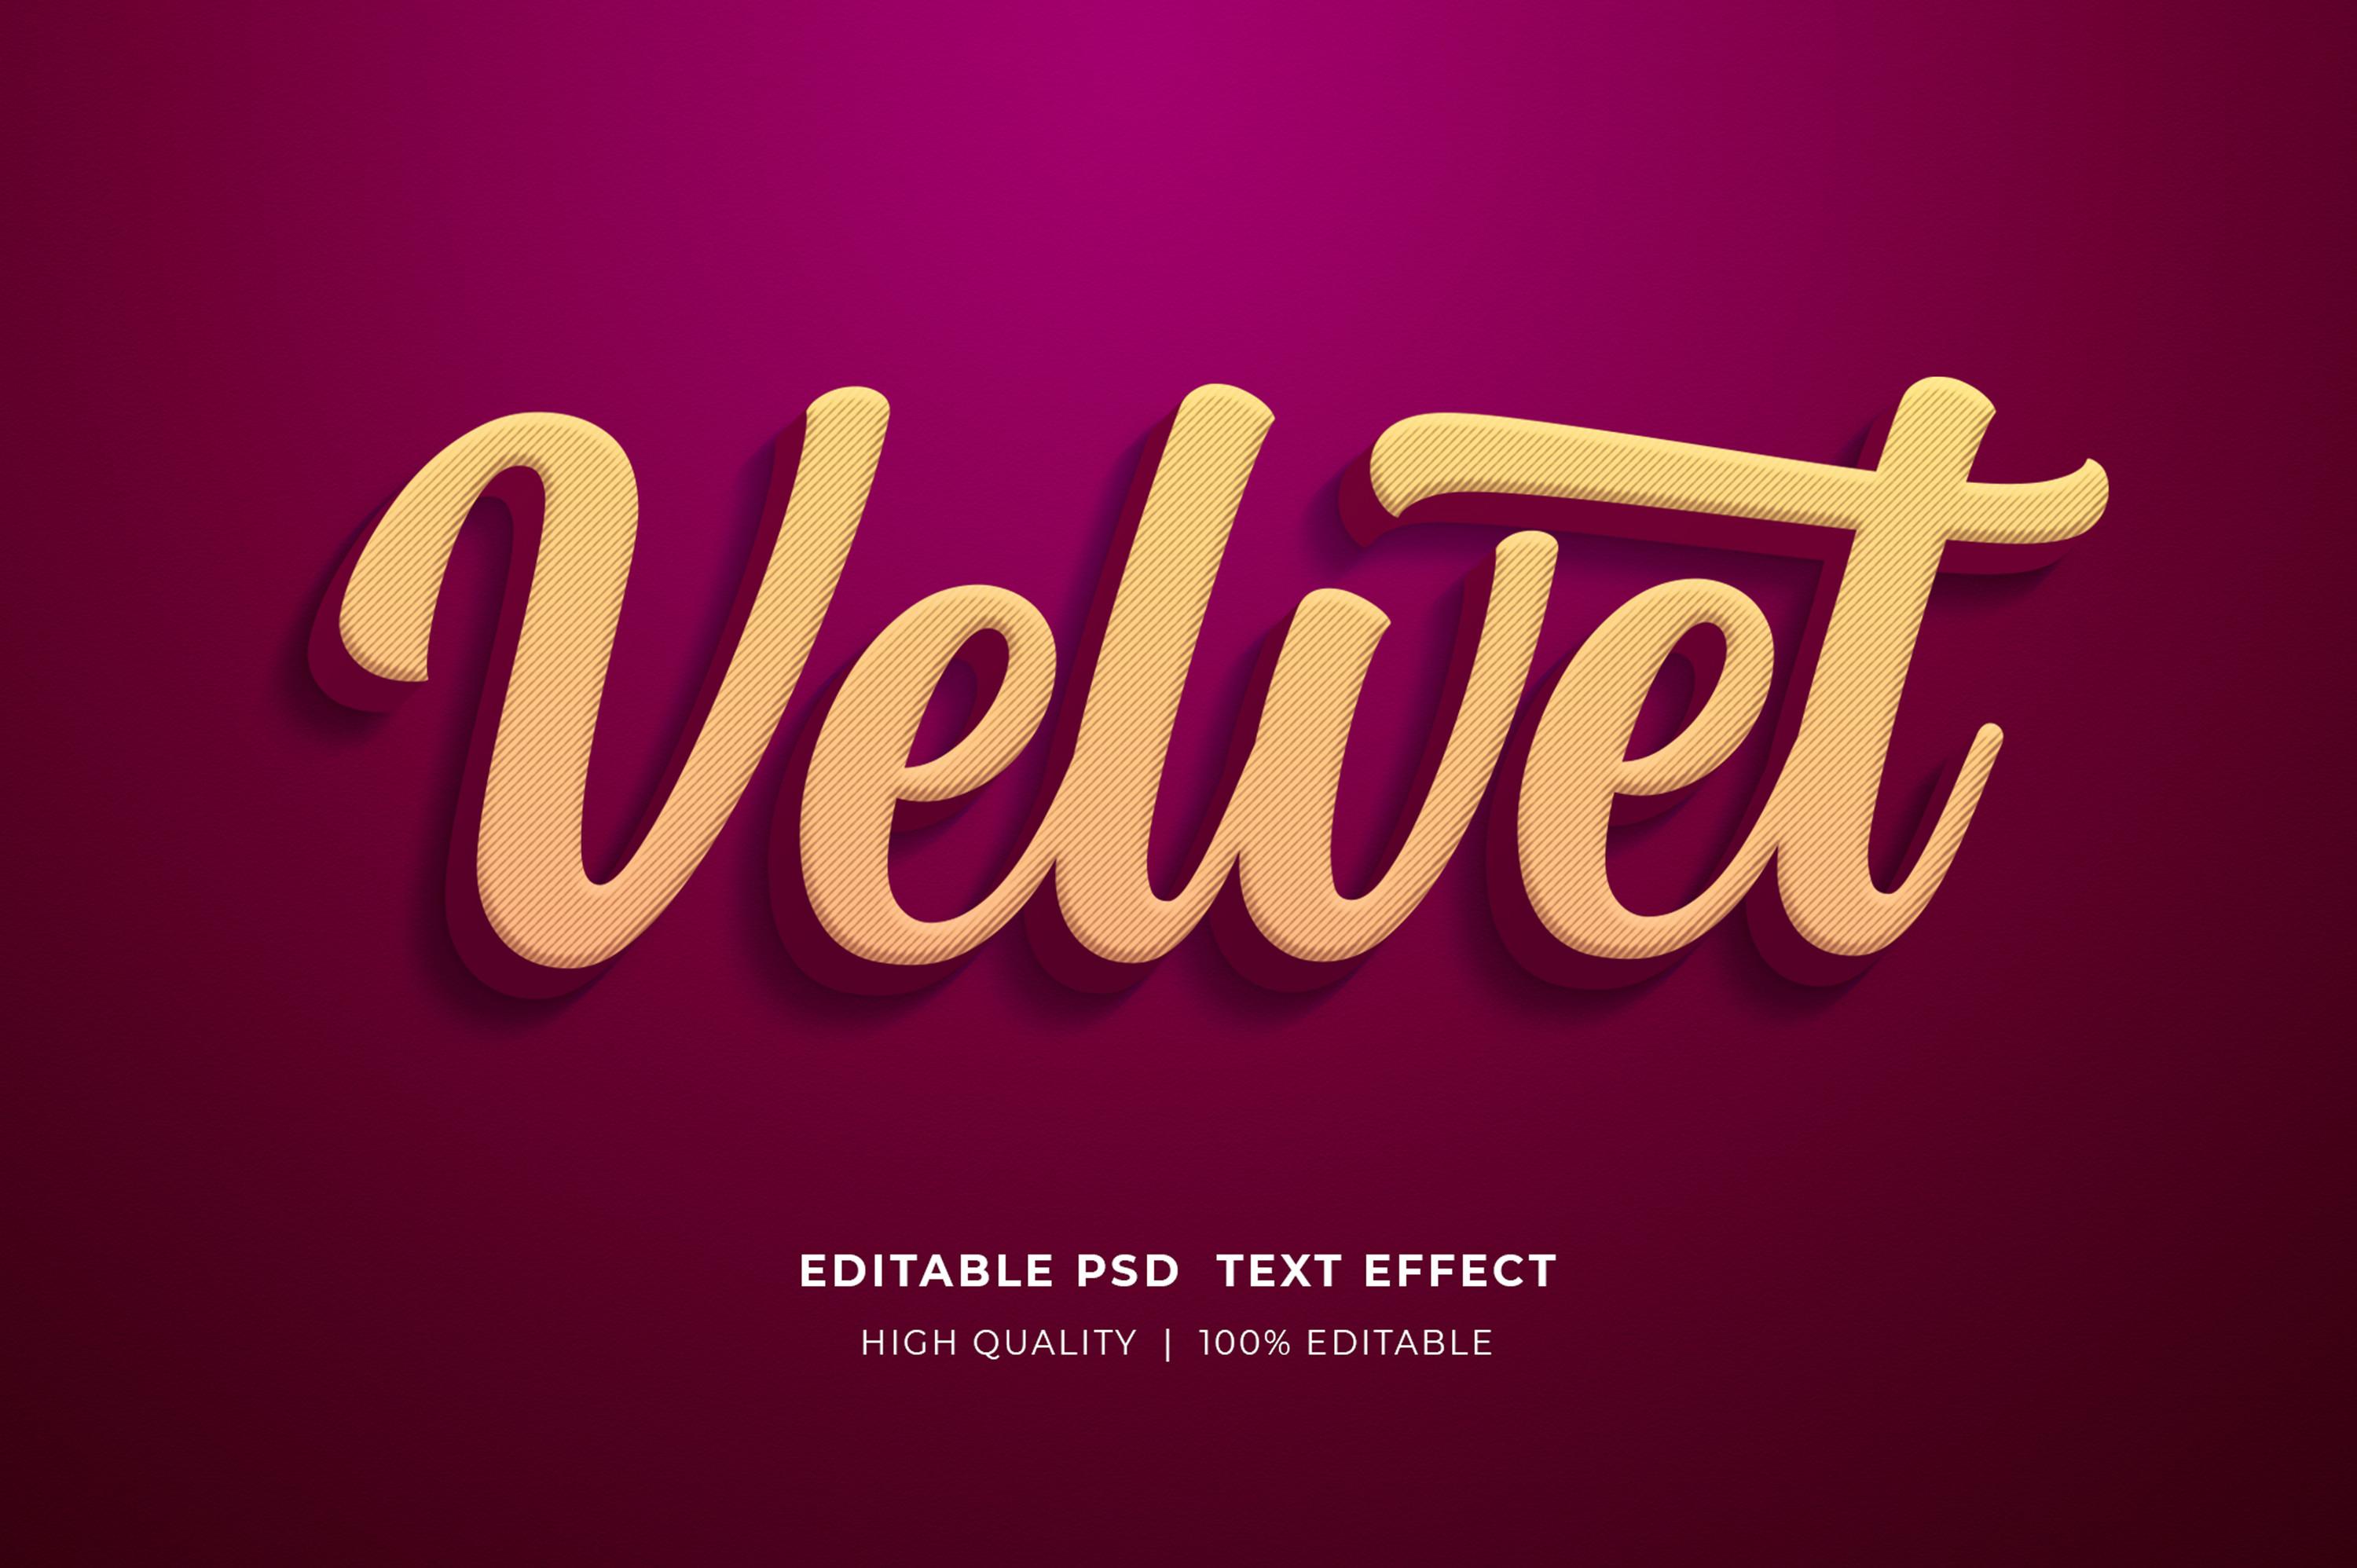 Velvet Editable Text Effect Mockup